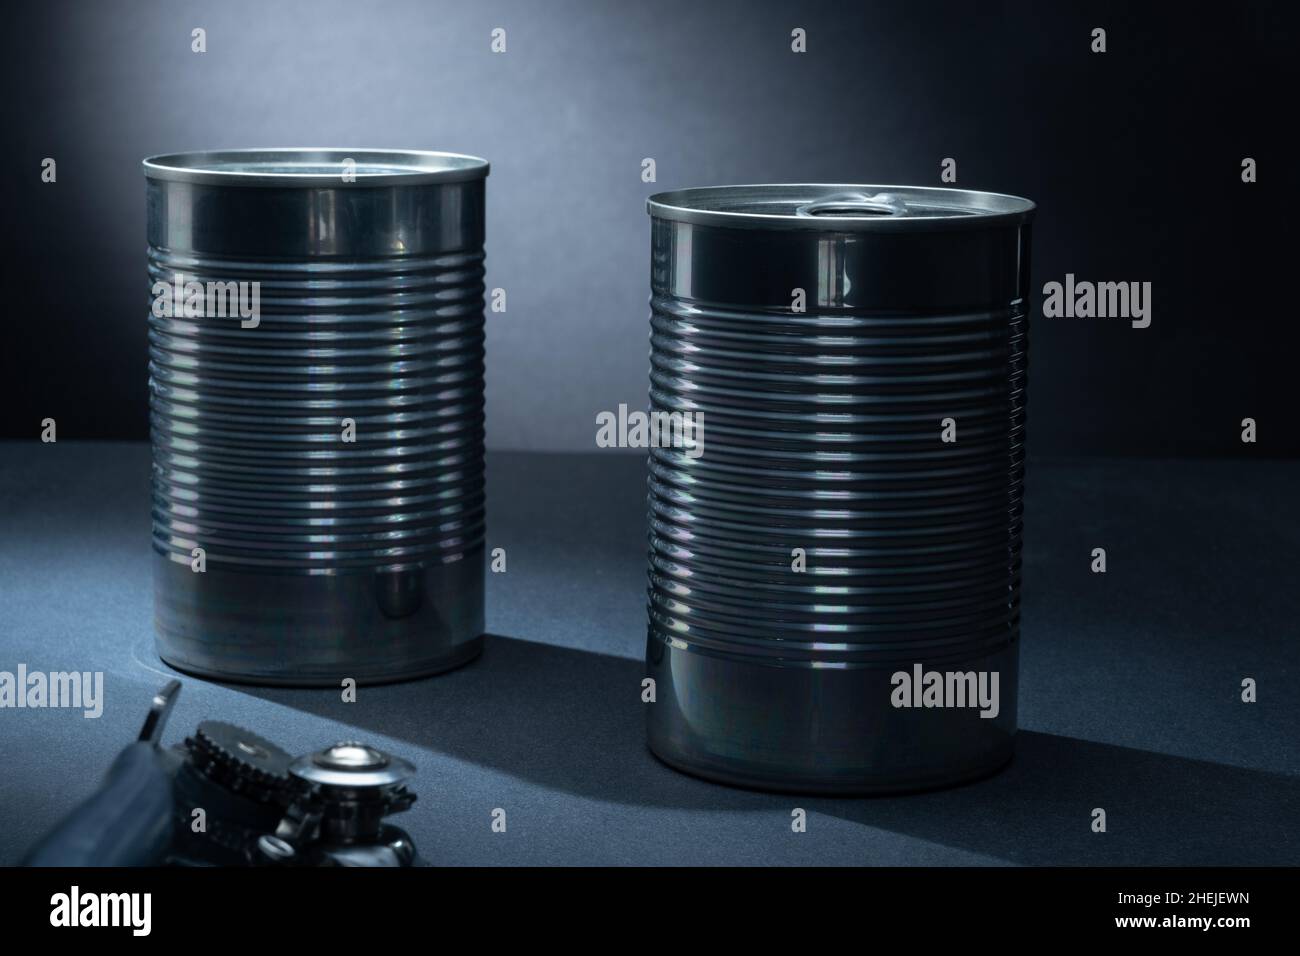 Helsinki / Finlande - 10 JANVIER 2022 : gros plan de deux boîtes métalliques sur fond sombre. Banque D'Images